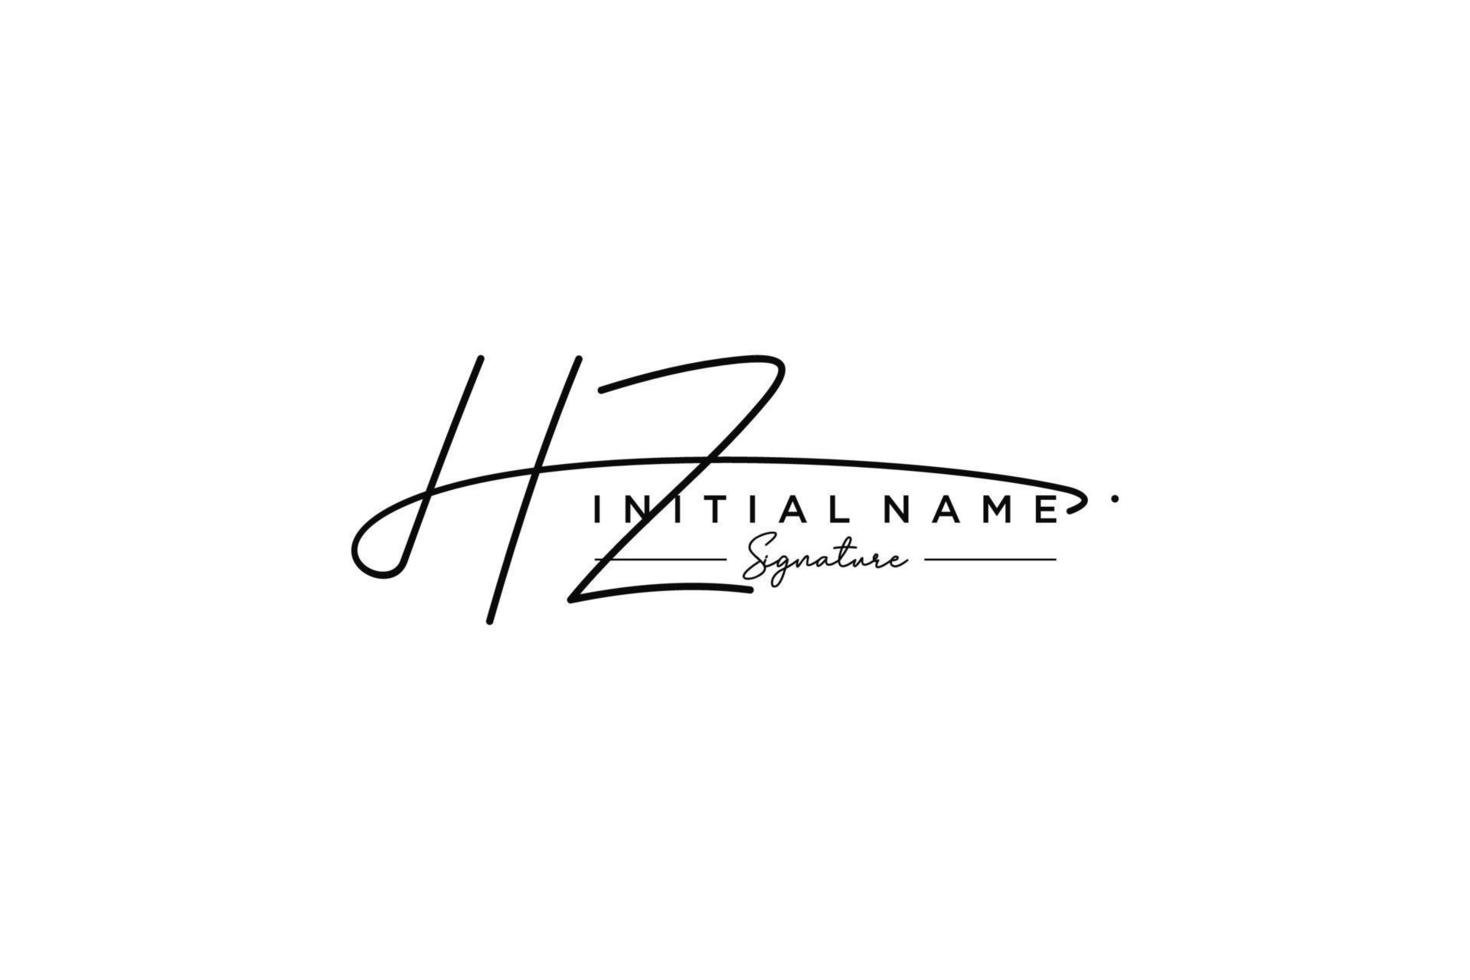 vecteur de modèle de logo de signature initiale hz. illustration vectorielle de calligraphie dessinée à la main.